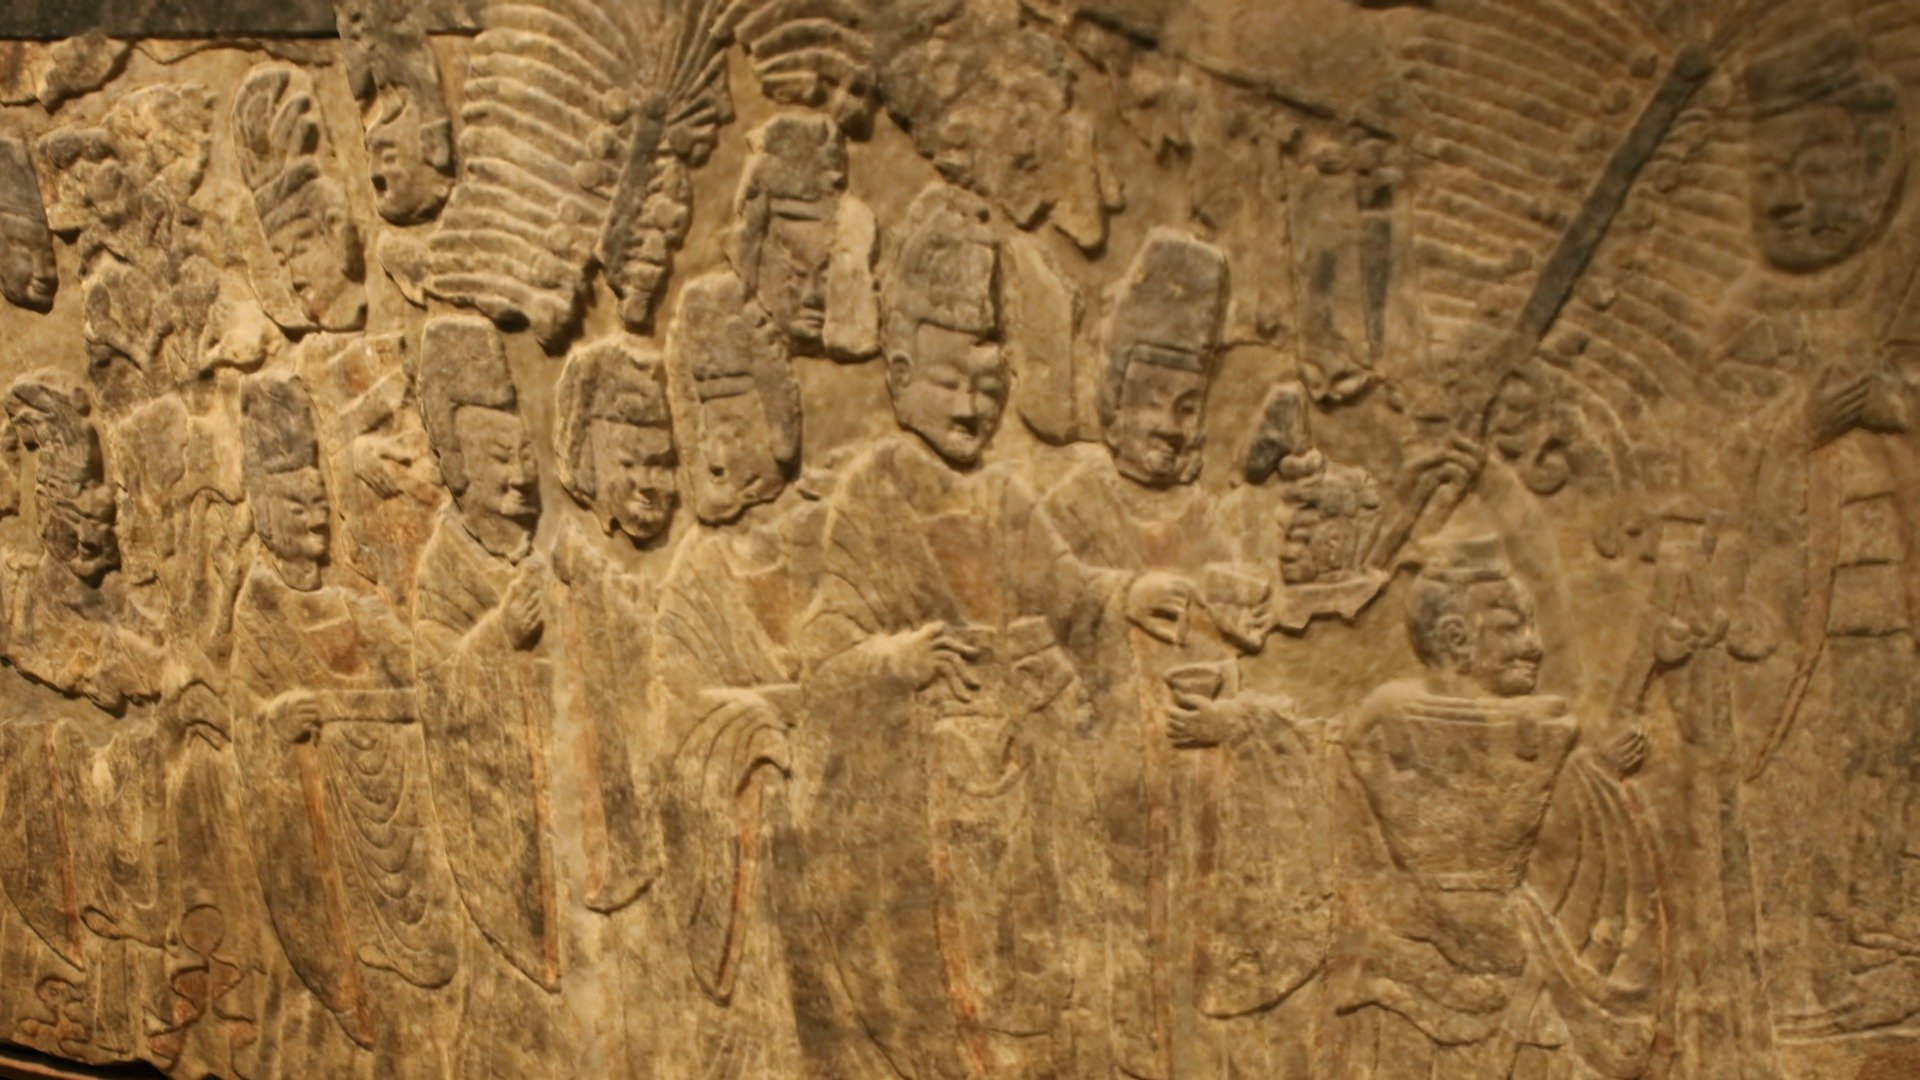 Emperor Xiaowen's procession, Longmen Caves